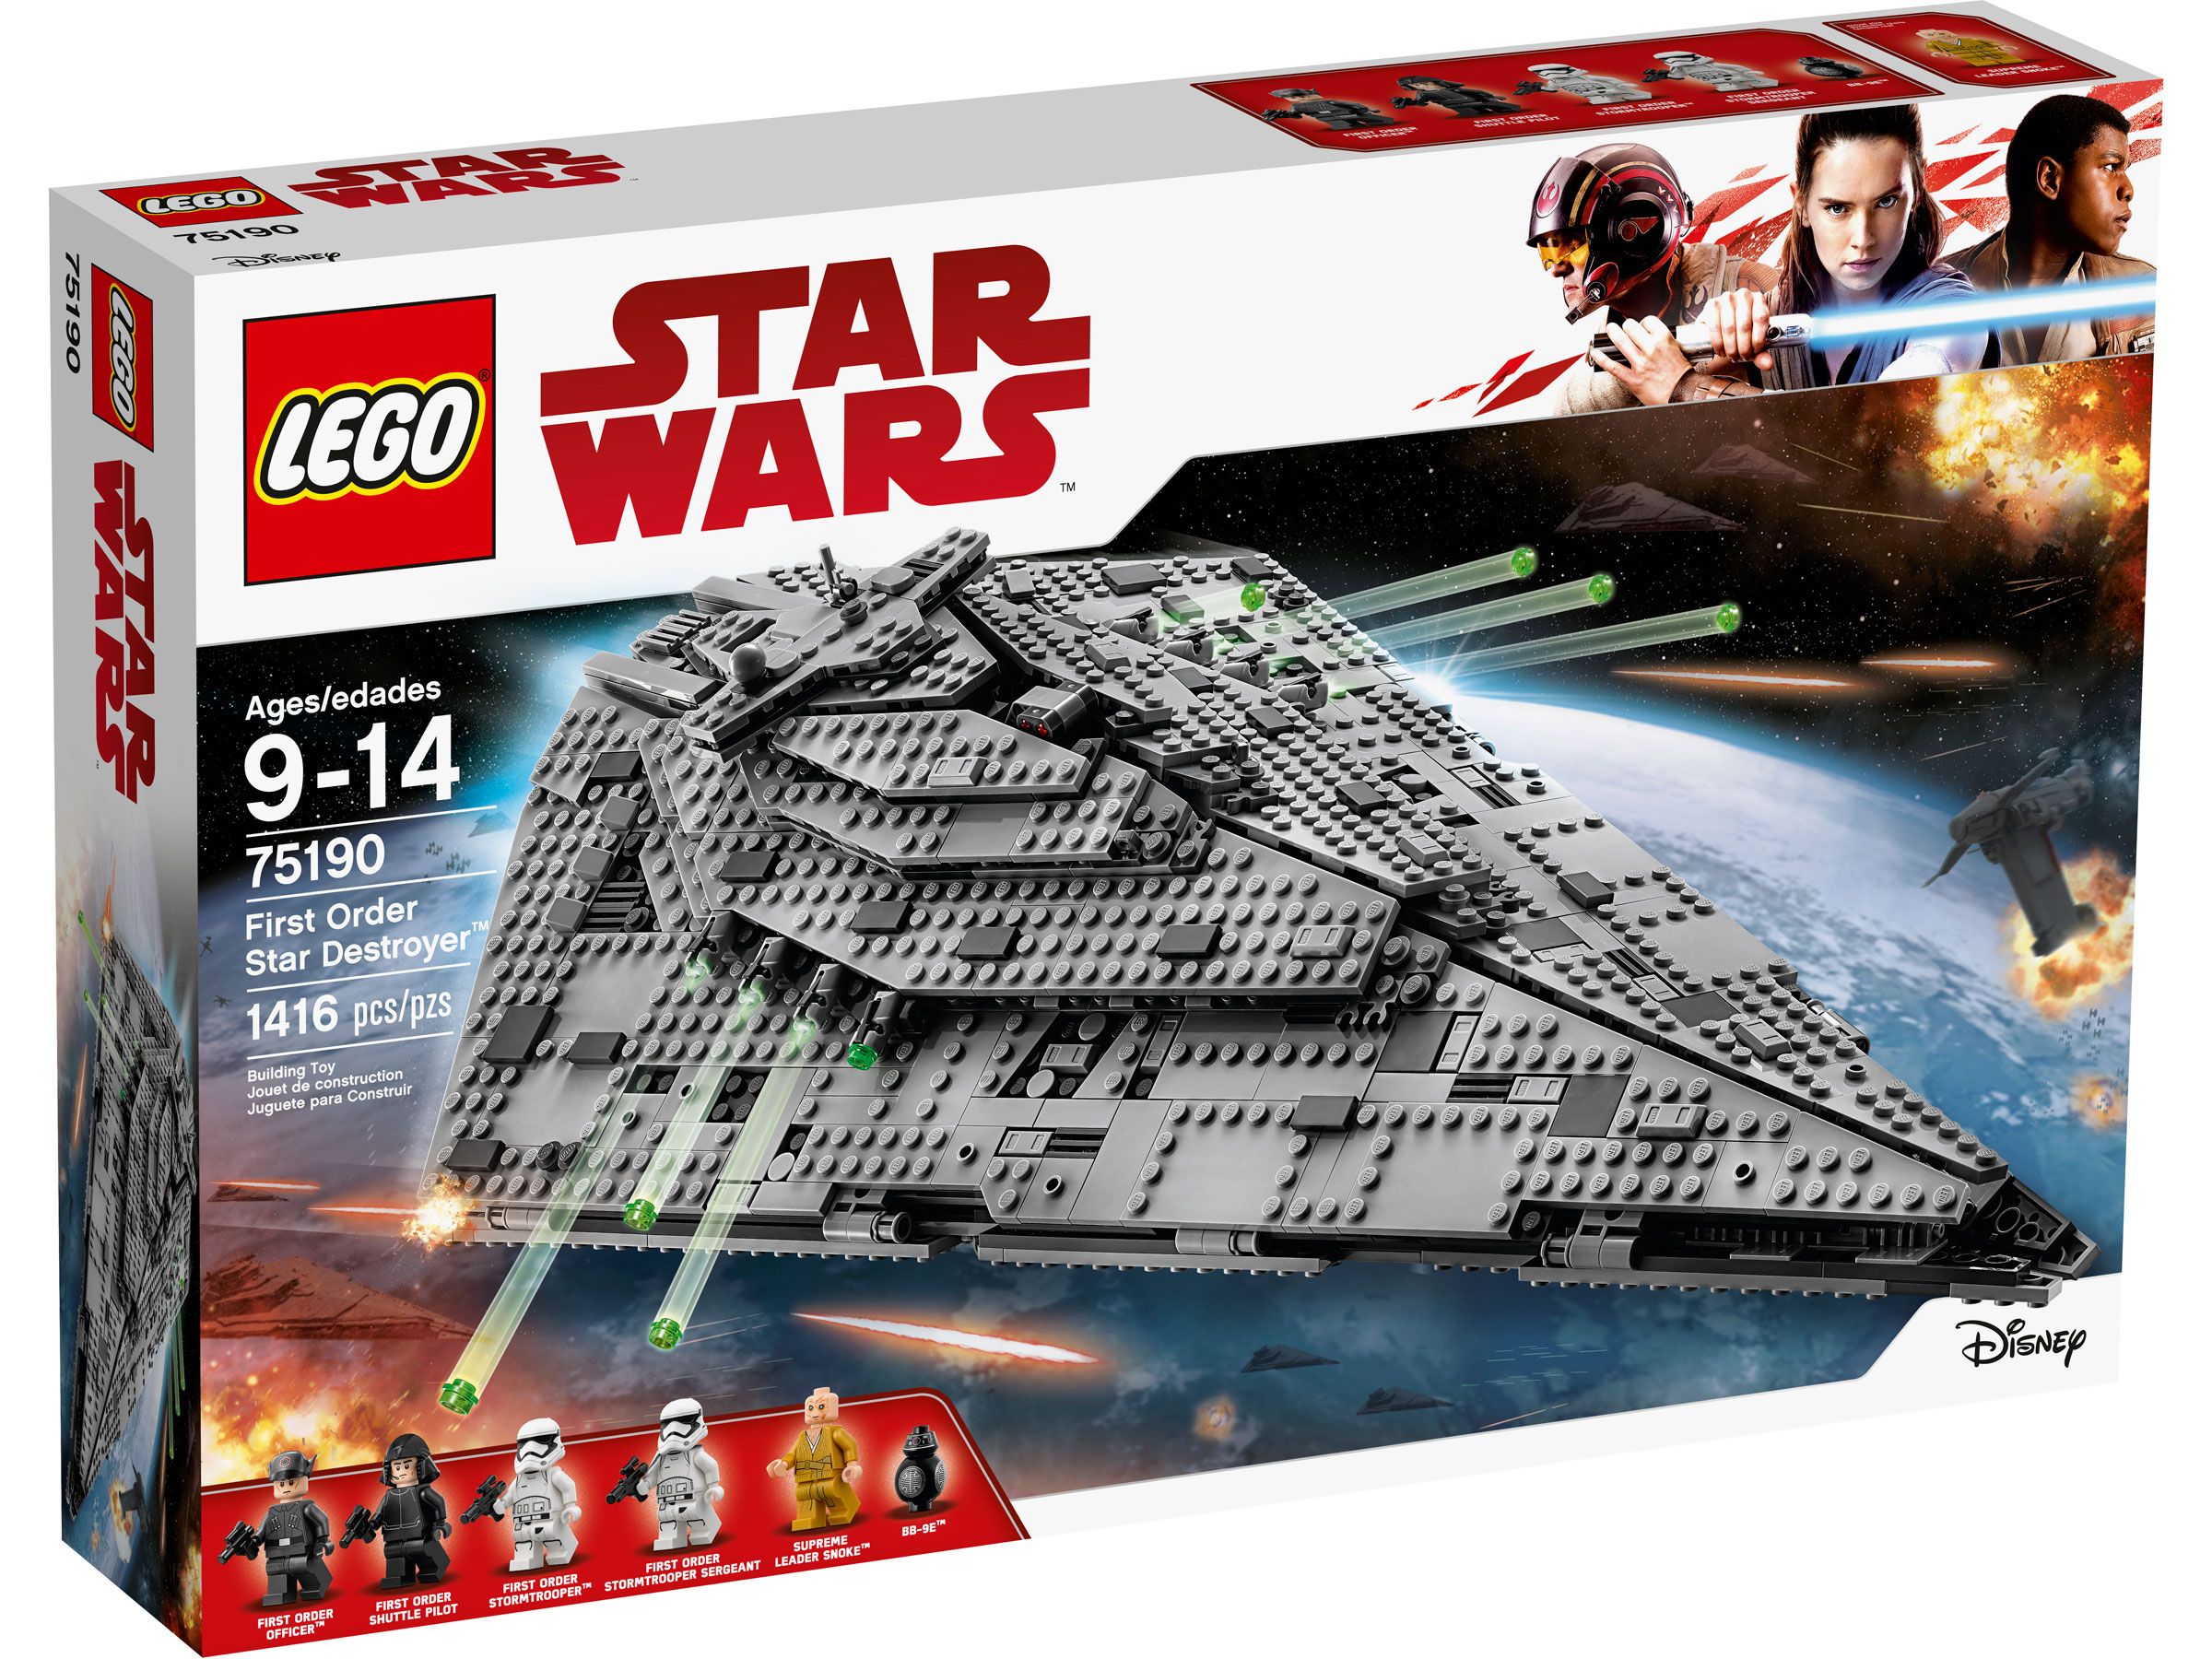 LEGO Star Wars 75190 First Order Star Destroyer™ LEGO_75190_Box1_v39.jpg